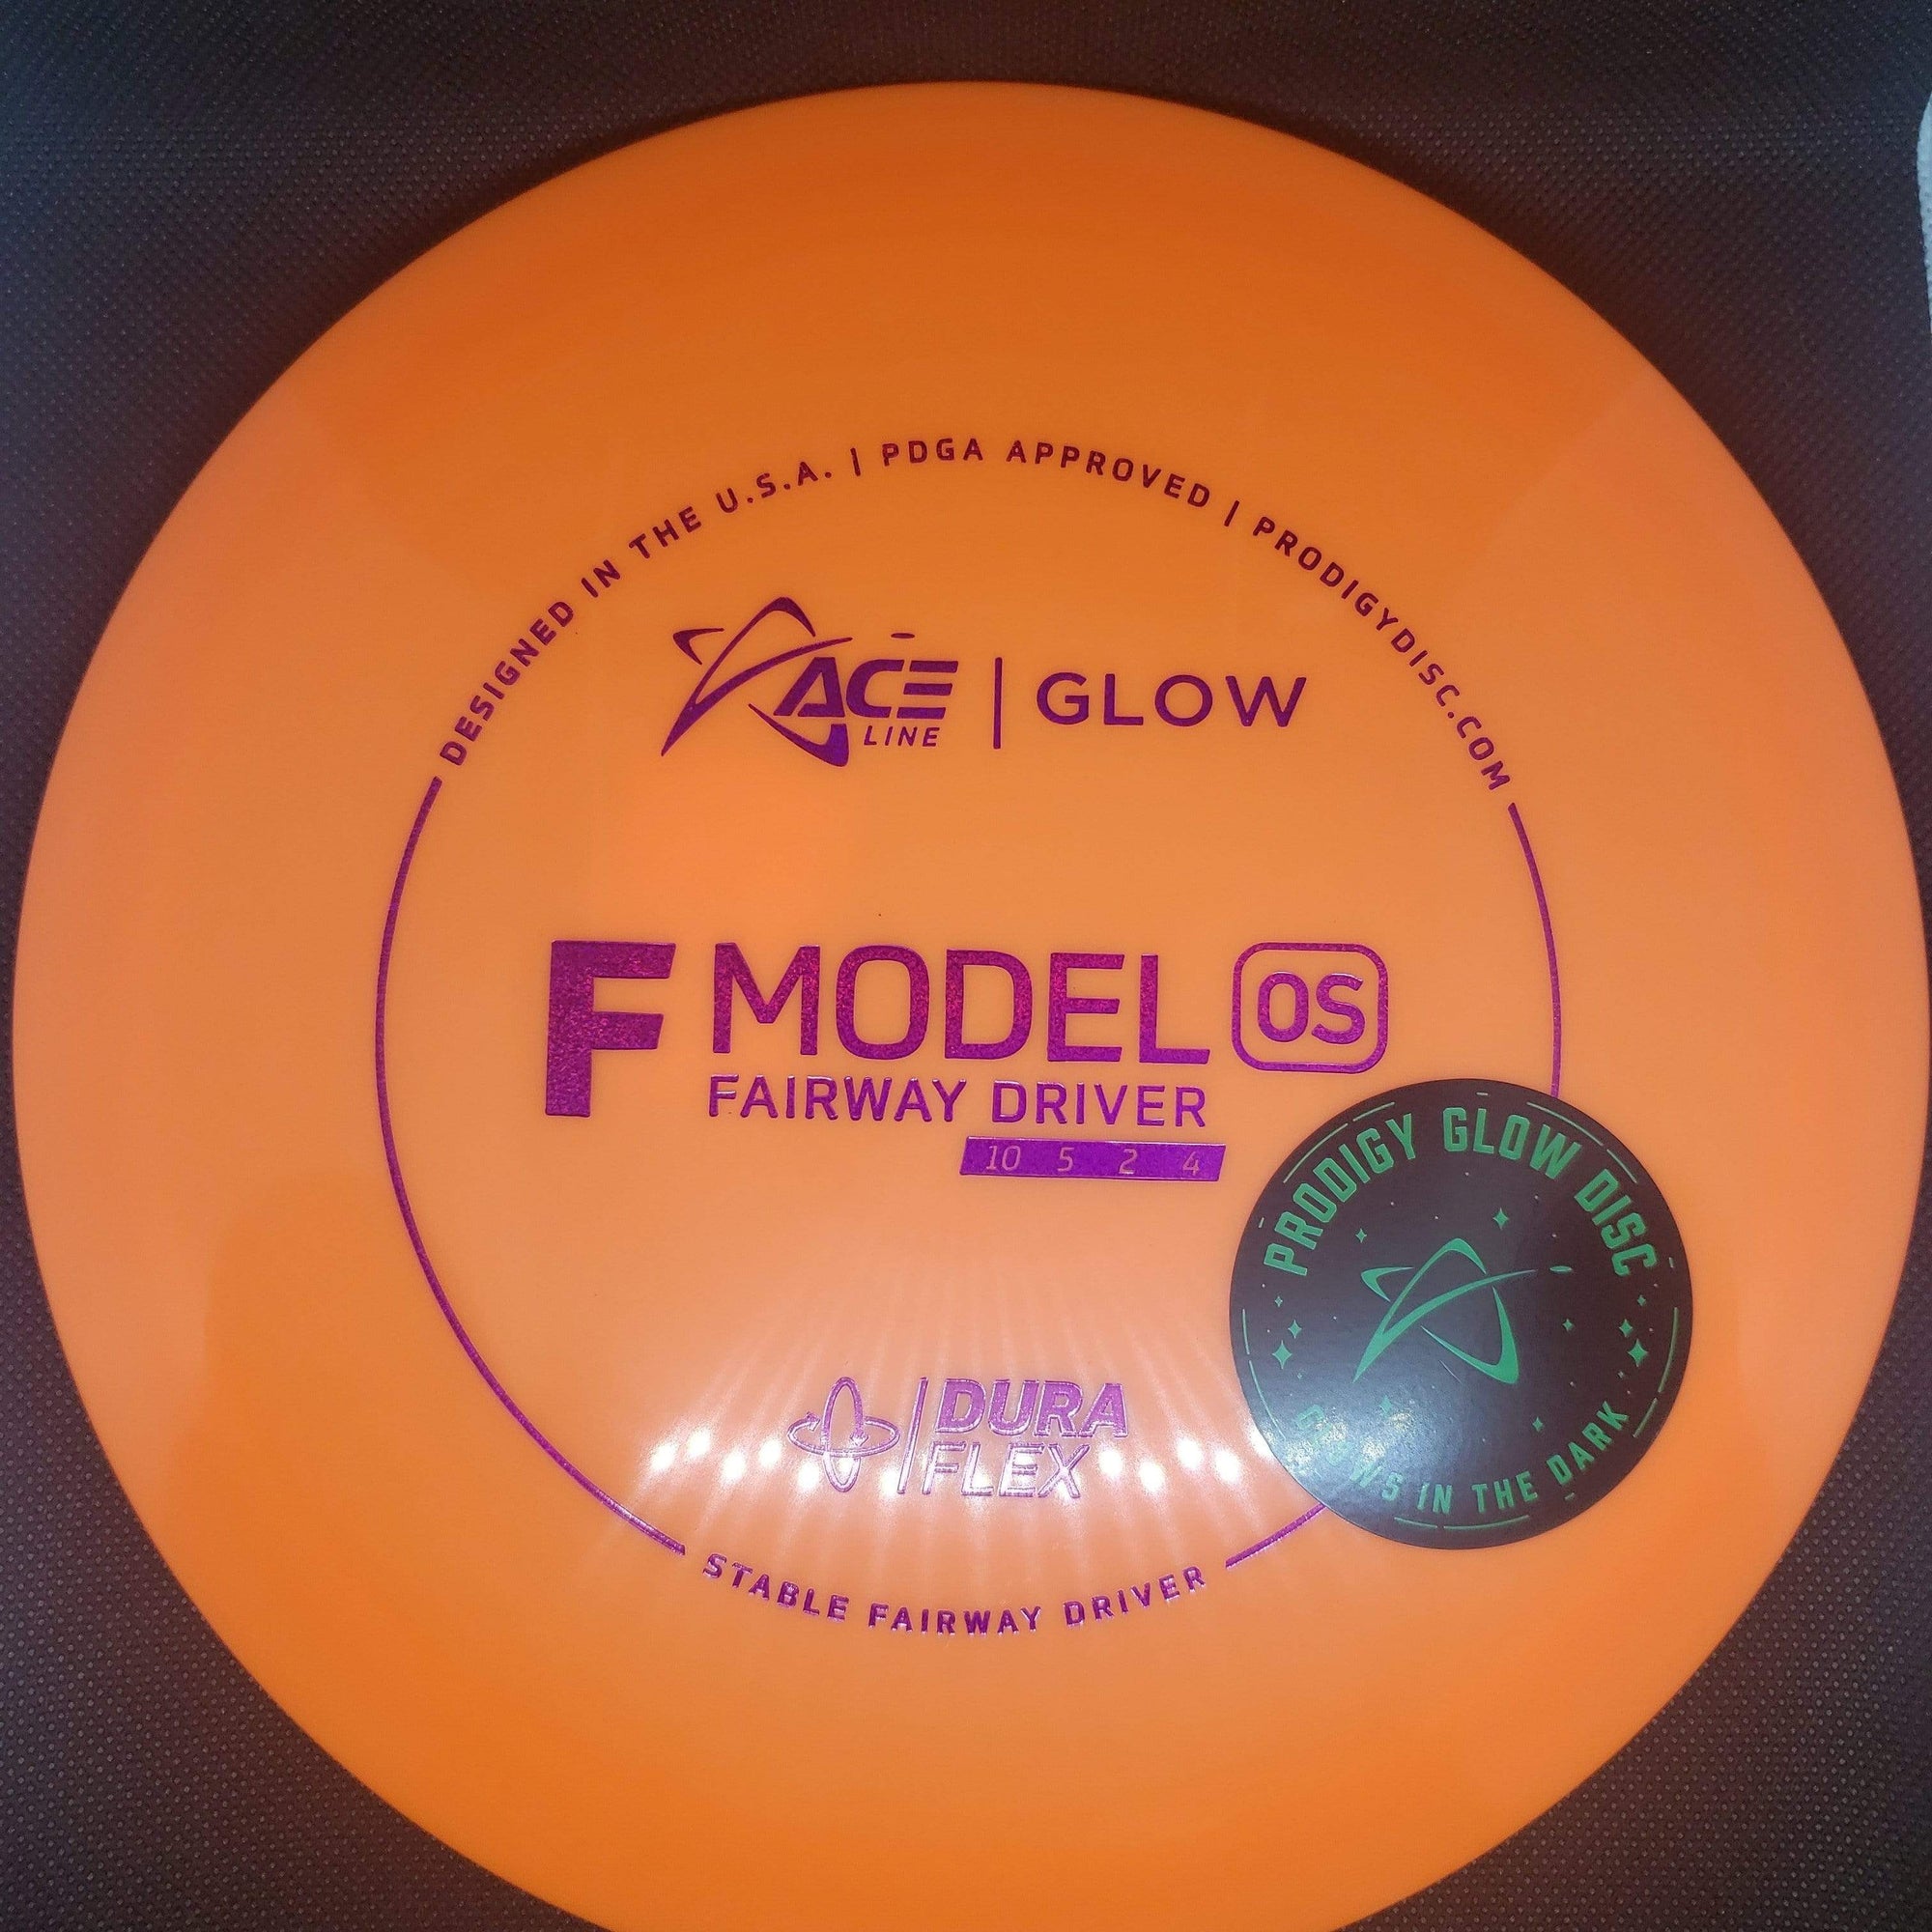 Prodigy Fairway Driver Orange Pink Shatter Stamp 174g F Model OS- DuraFlex